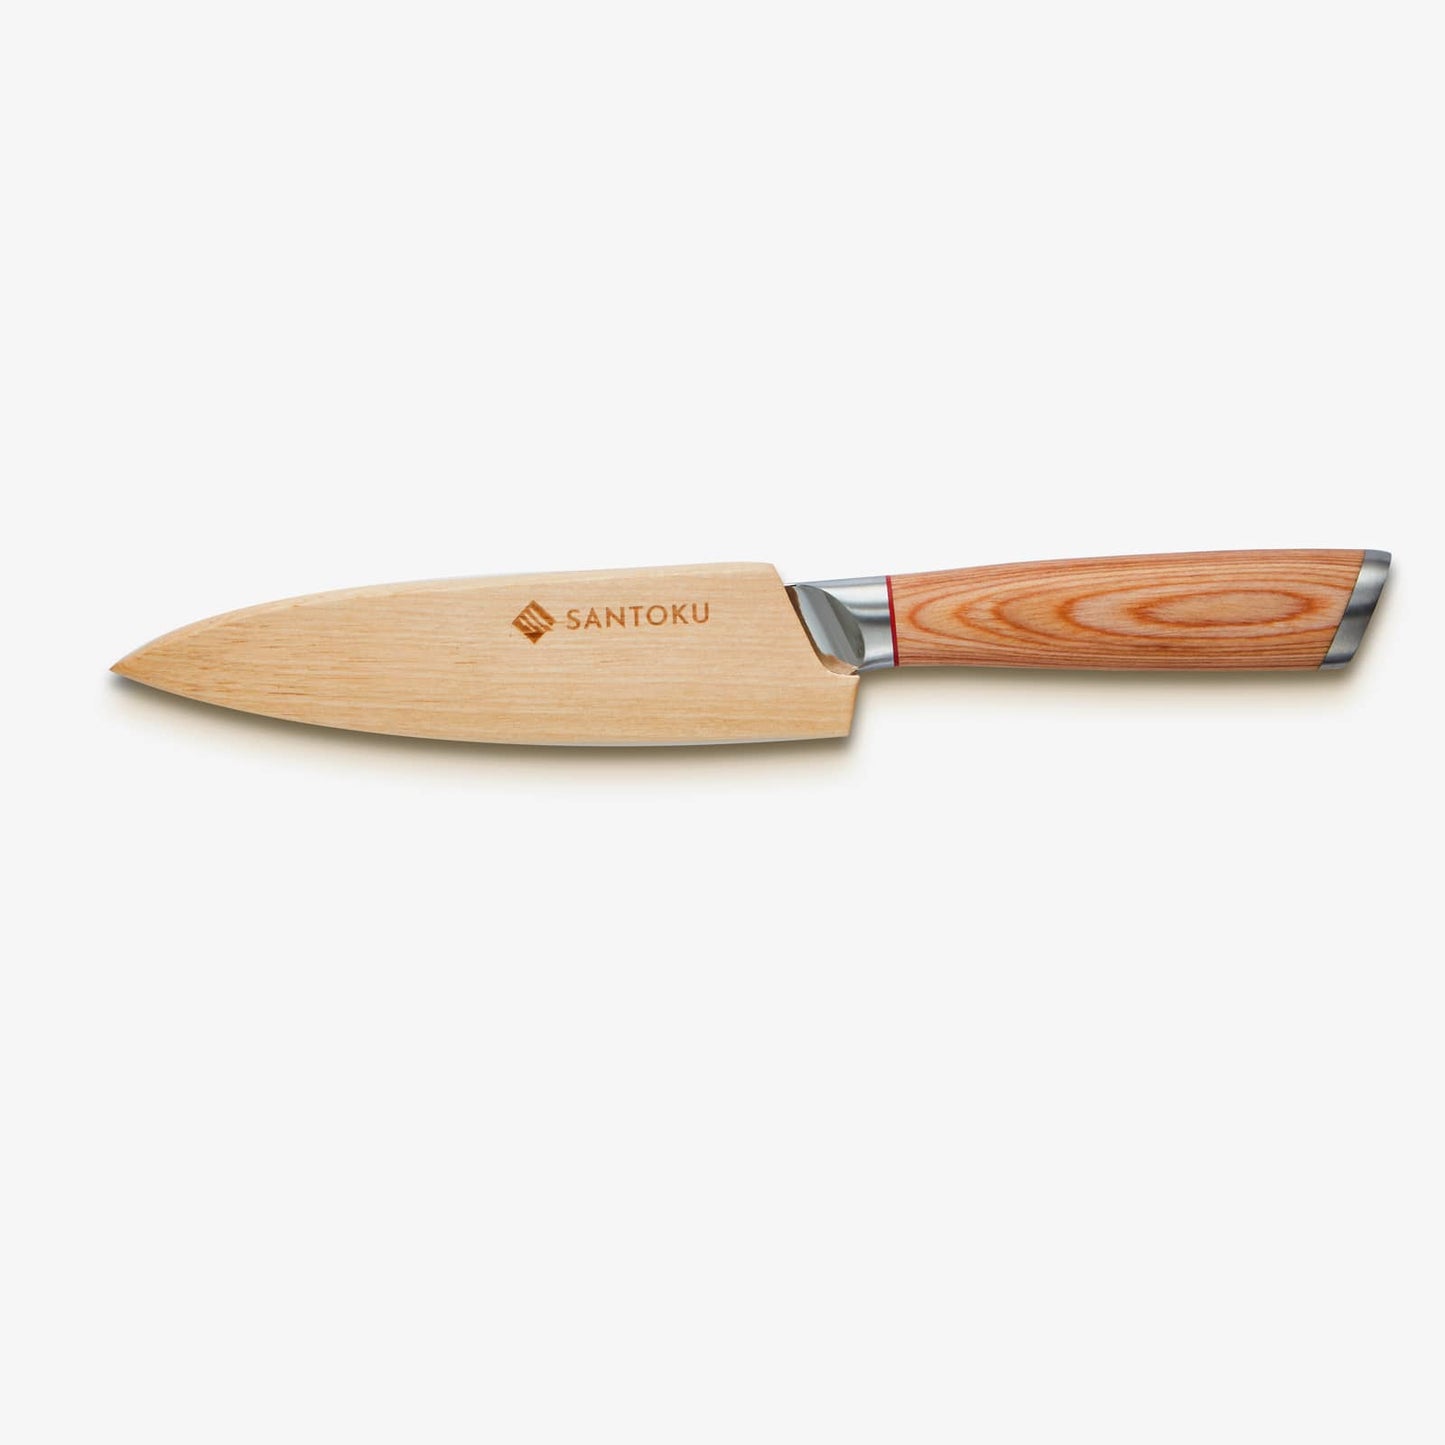 Haruta (はる はる) 5 tommer værktøjskniv